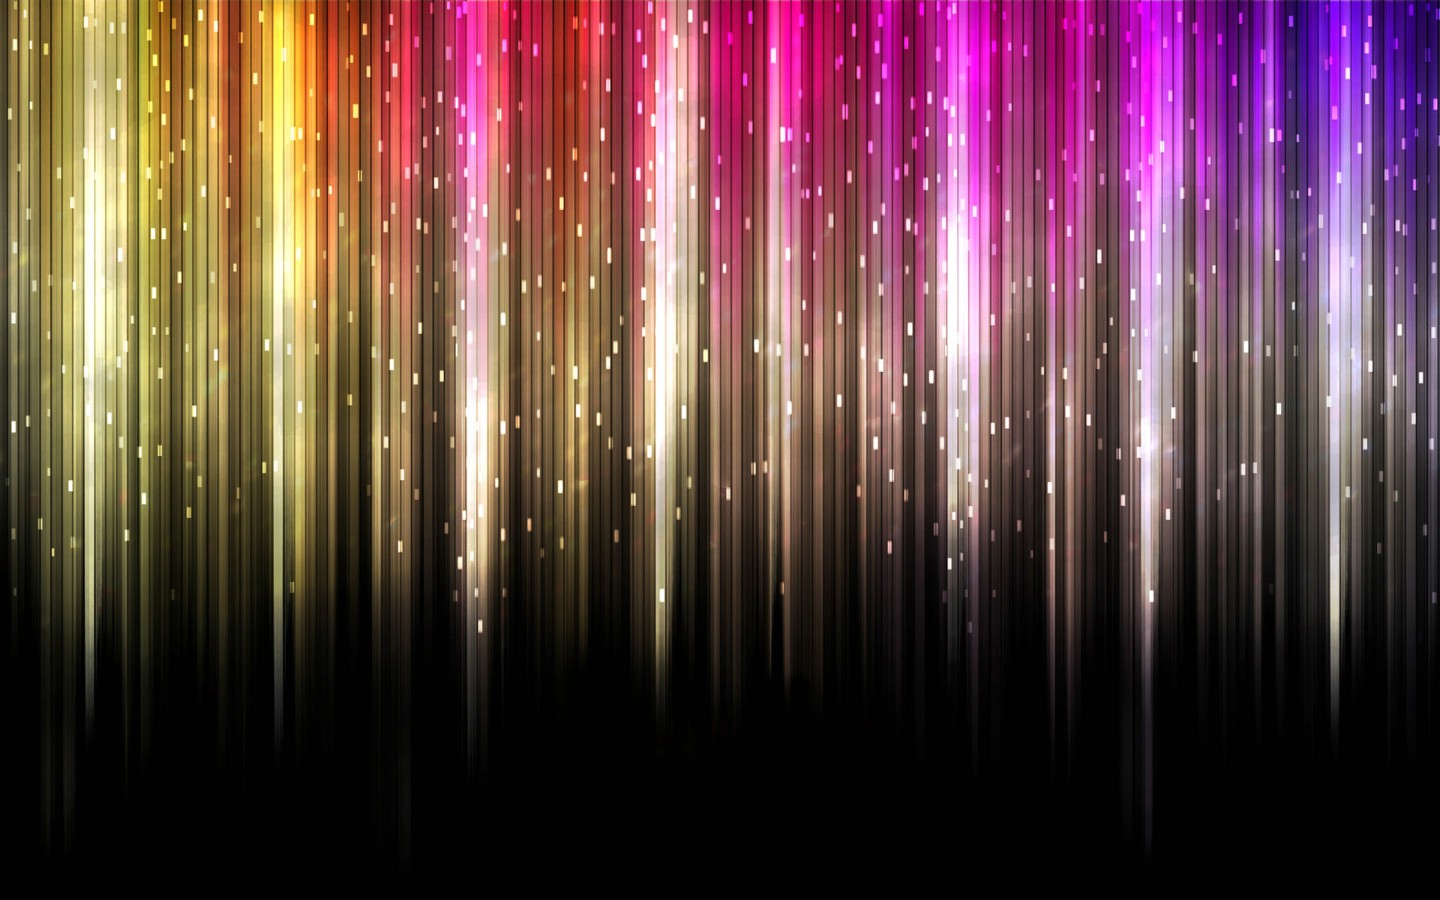 壁纸1440x900抽象背景 彩虹之色 彩虹之色 抽象背景壁纸 抽象背景 彩虹之色壁纸 抽象背景 彩虹之色图片 抽象背景 彩虹之色素材 插画壁纸 插画图库 插画图片素材桌面壁纸